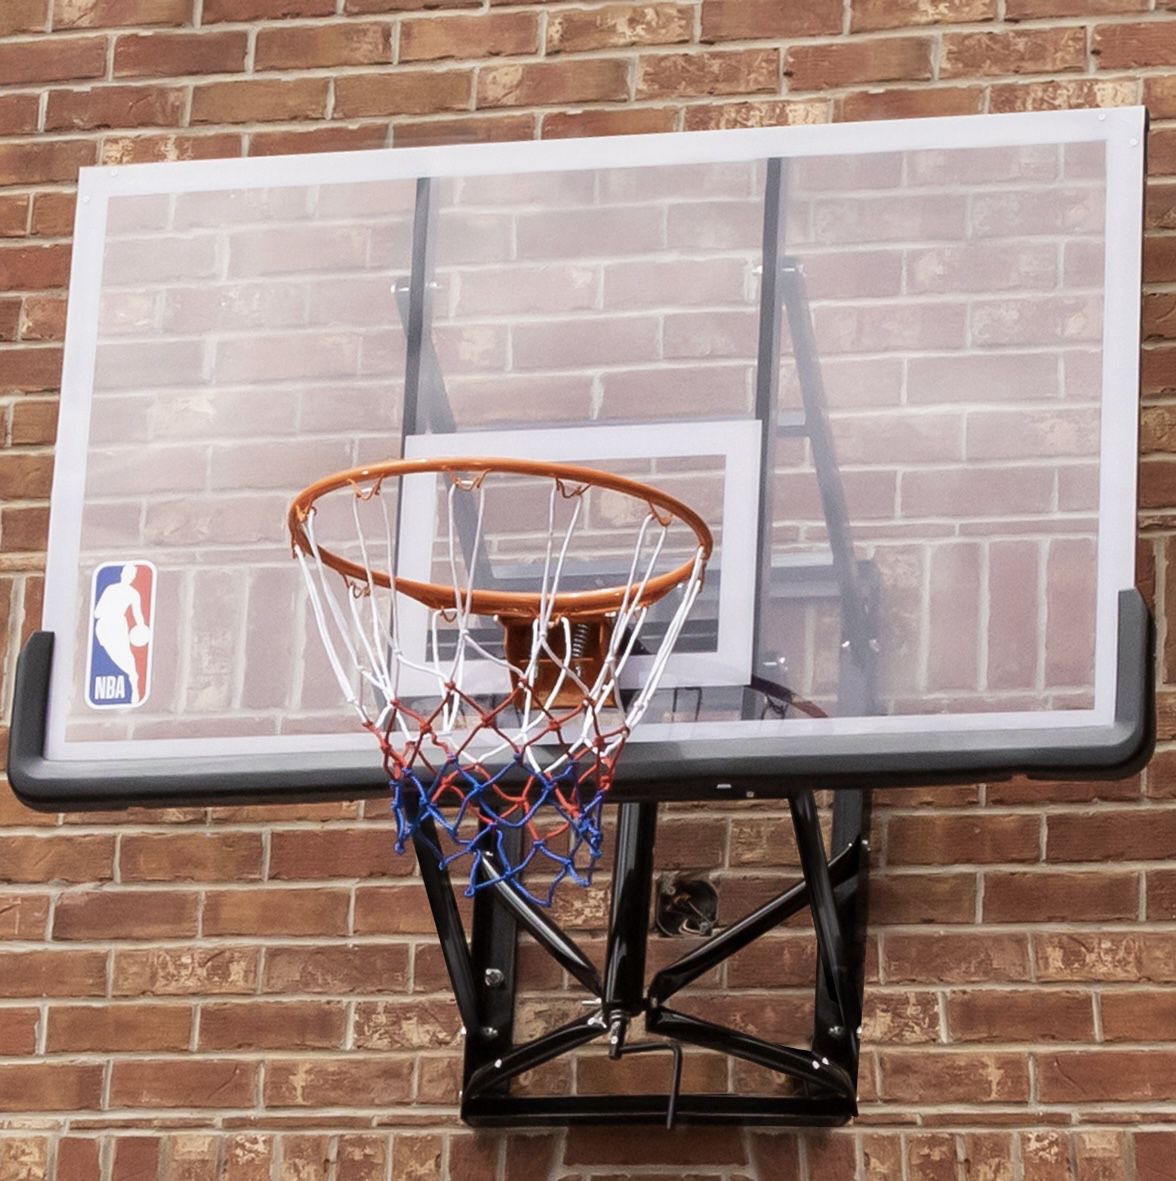 NBA 54” Wall Mounted Basketball Hoop